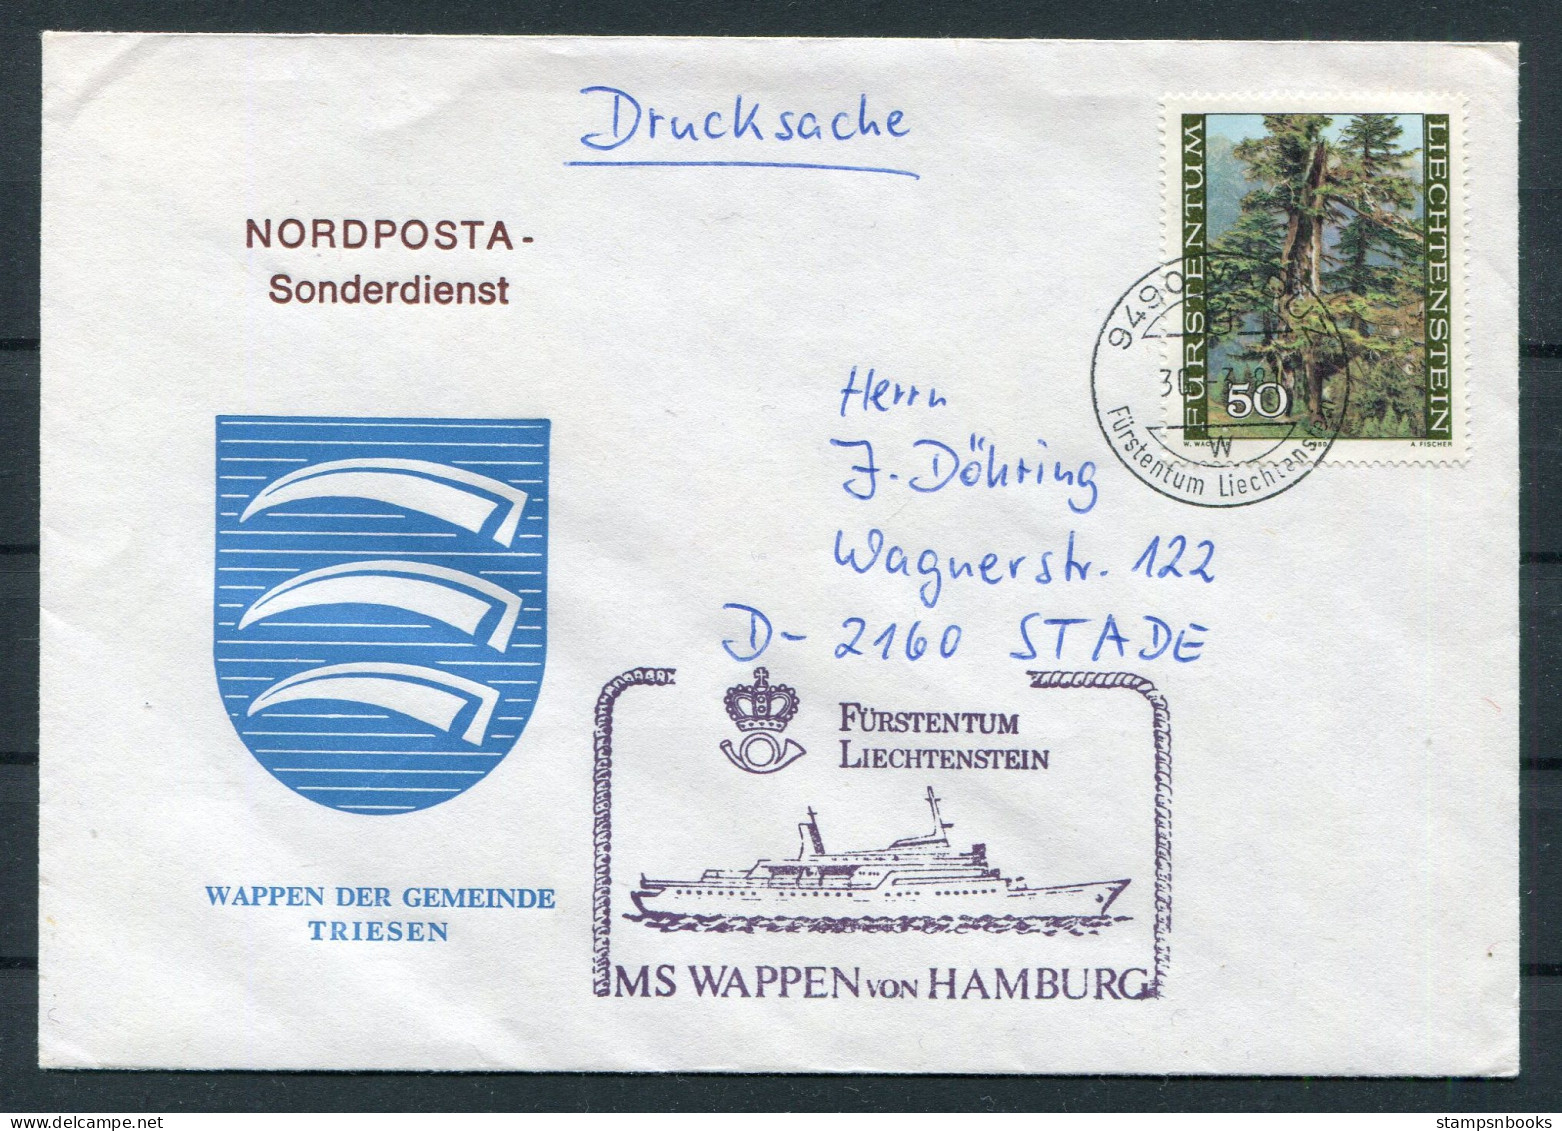 1981 Liechtenstein Vaduz Trees MS WAPPEN VON HAMBURG Ship Cover. Wappen Der Gemeinde TRIESEN Coat-of-Arms - Covers & Documents